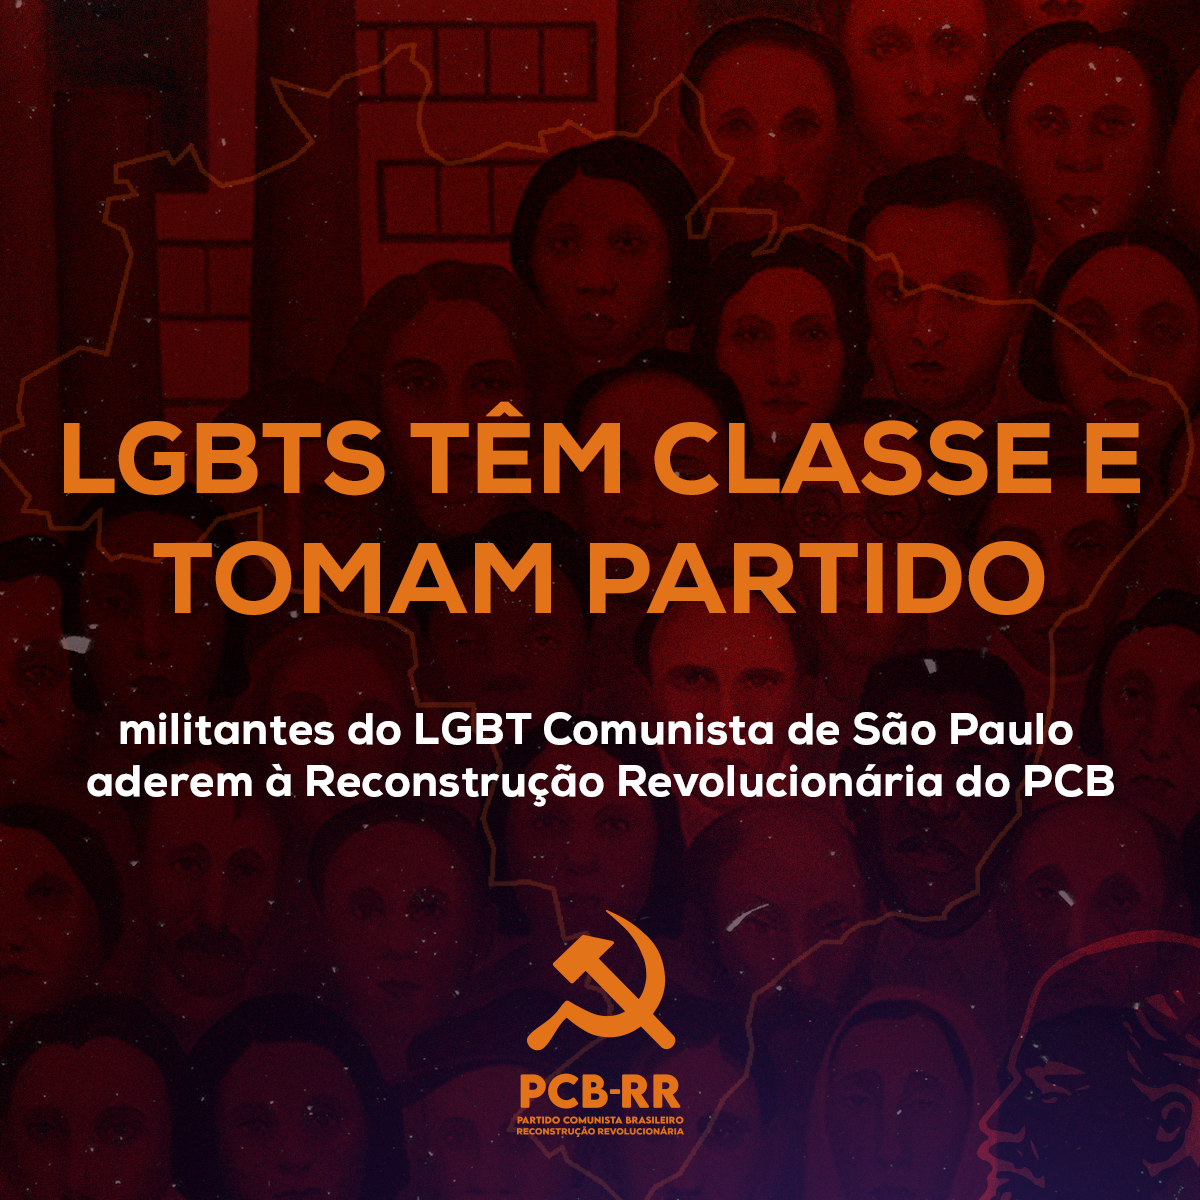 LGBTs têm classe e tomam Partido: Militantes do LGBT Comunista de SP aderem à Reconstrução Revolucionária do PCB